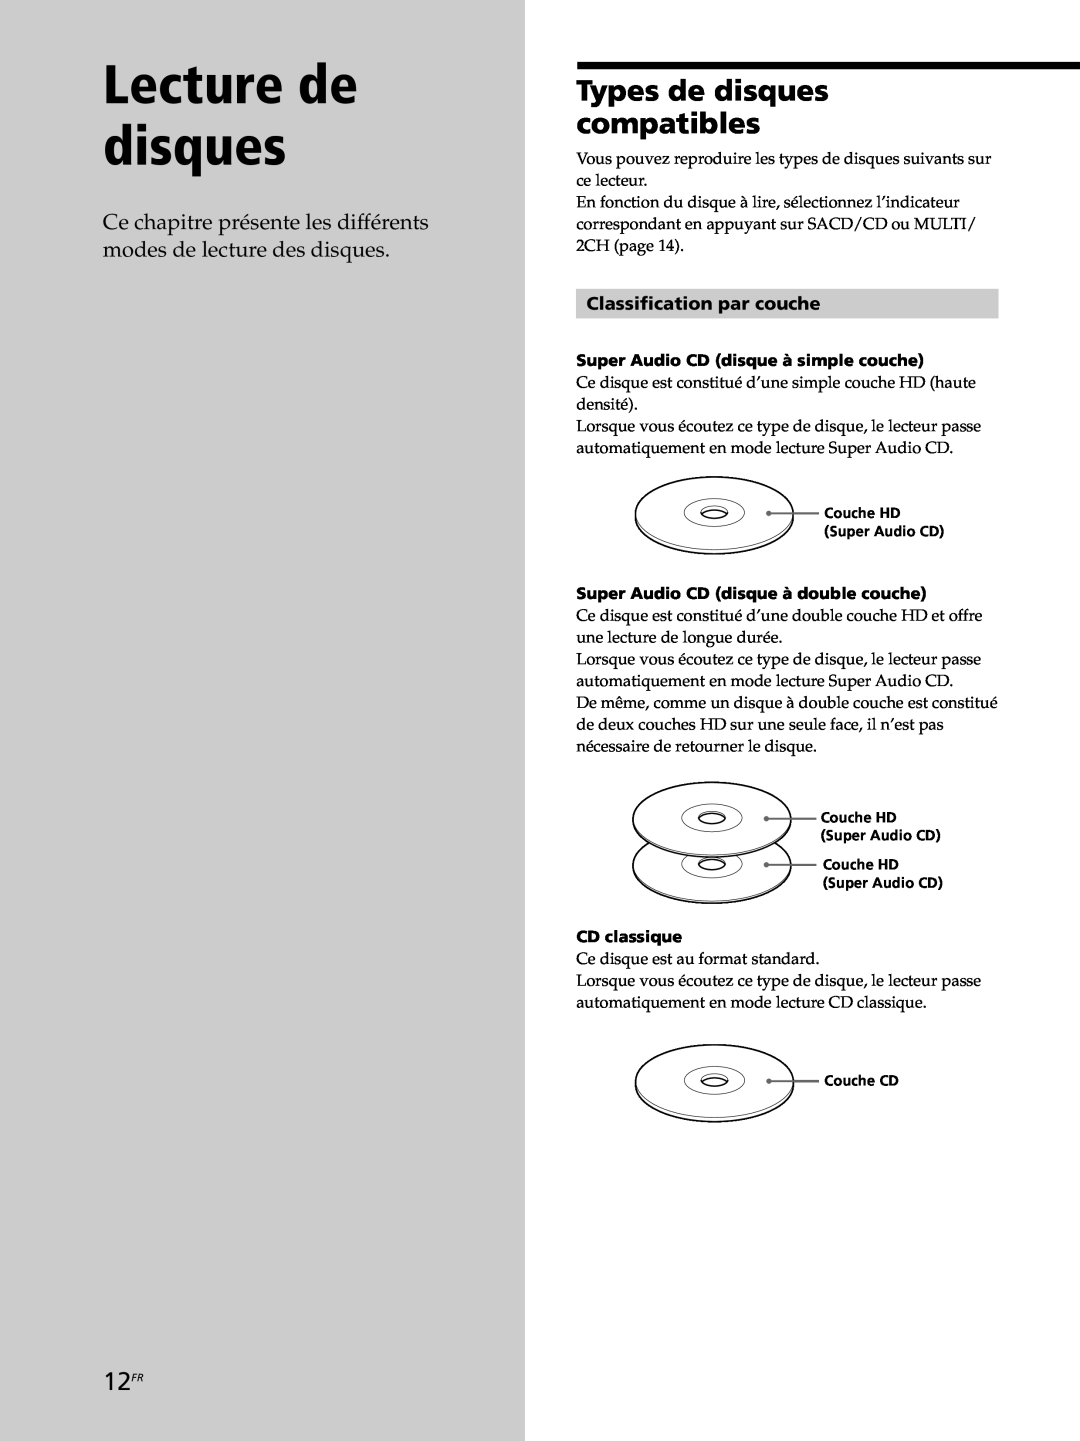 Sony SCD-XB770 operating instructions Lecture de disques, Types de disques compatibles, 12FR, Classification par couche 